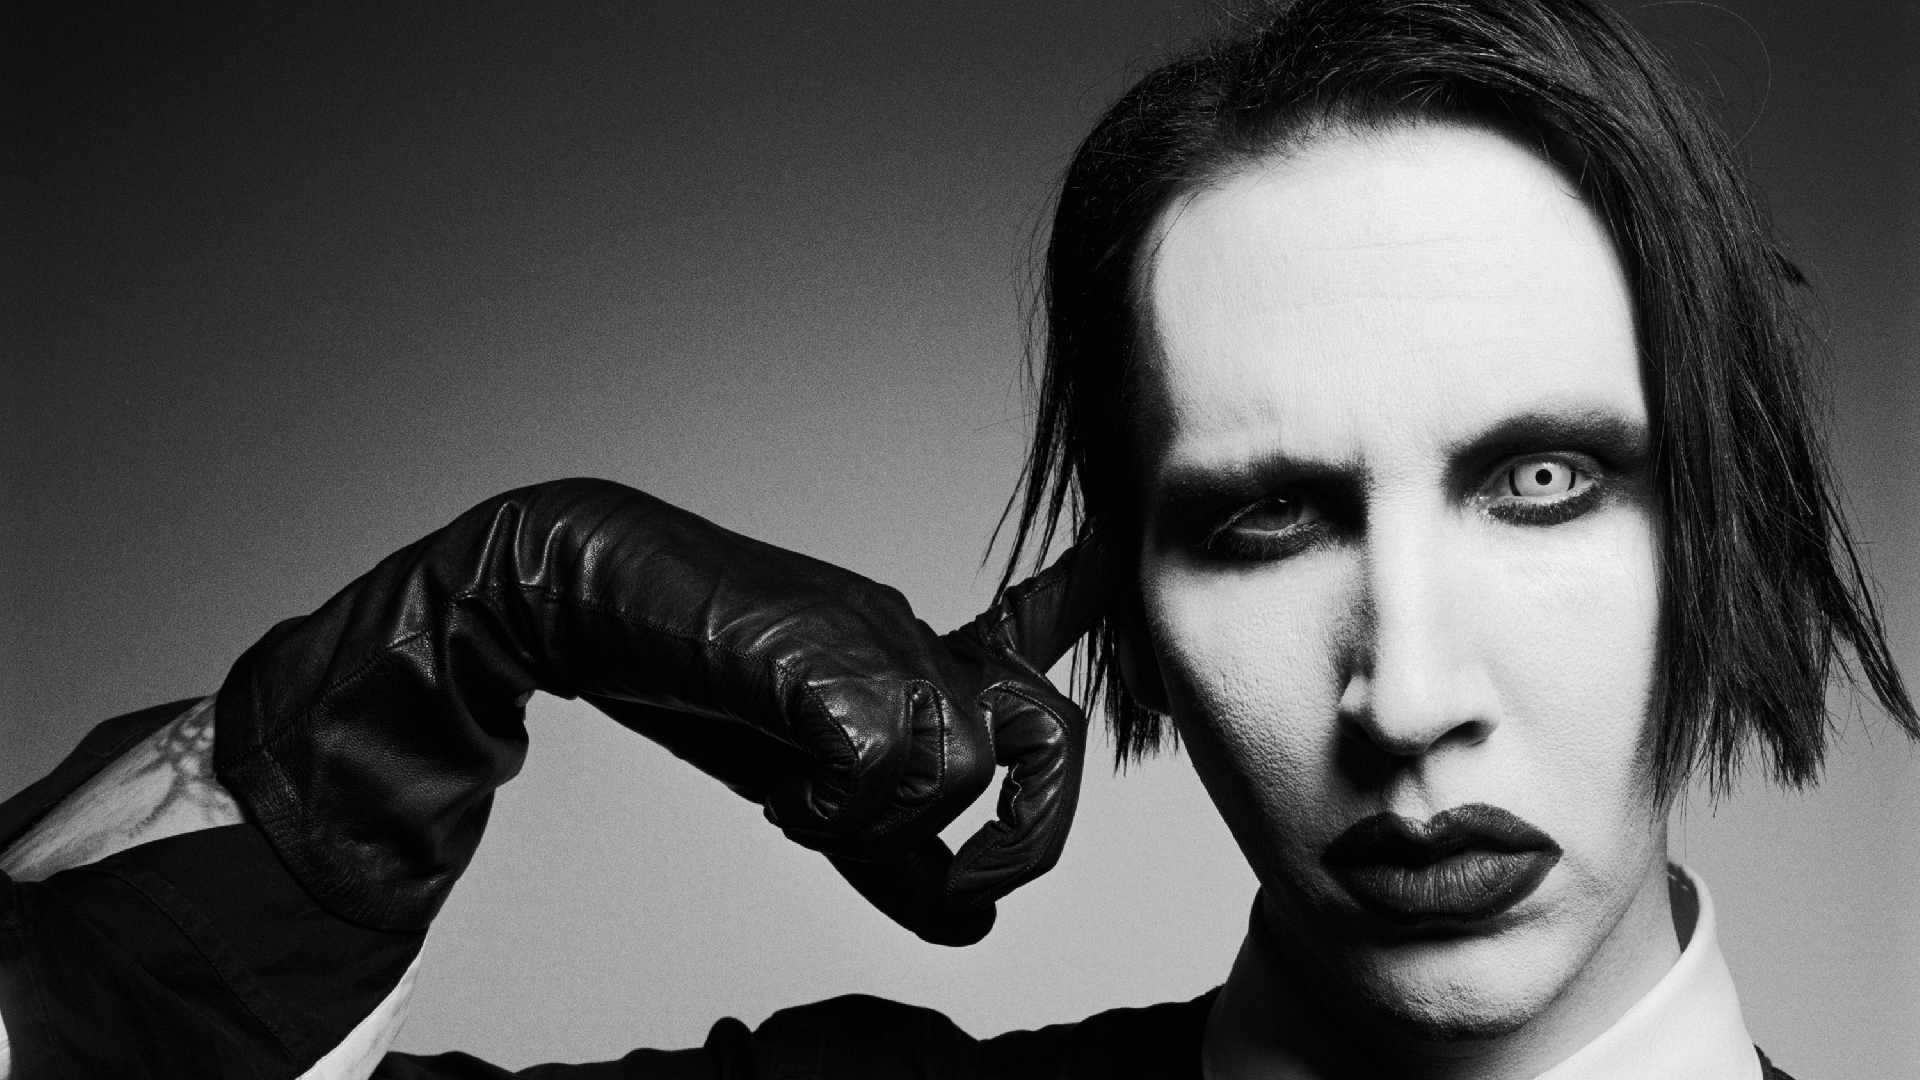 Marilyn Manson formará parte de ‘American Gods’ - Cúsica Plus